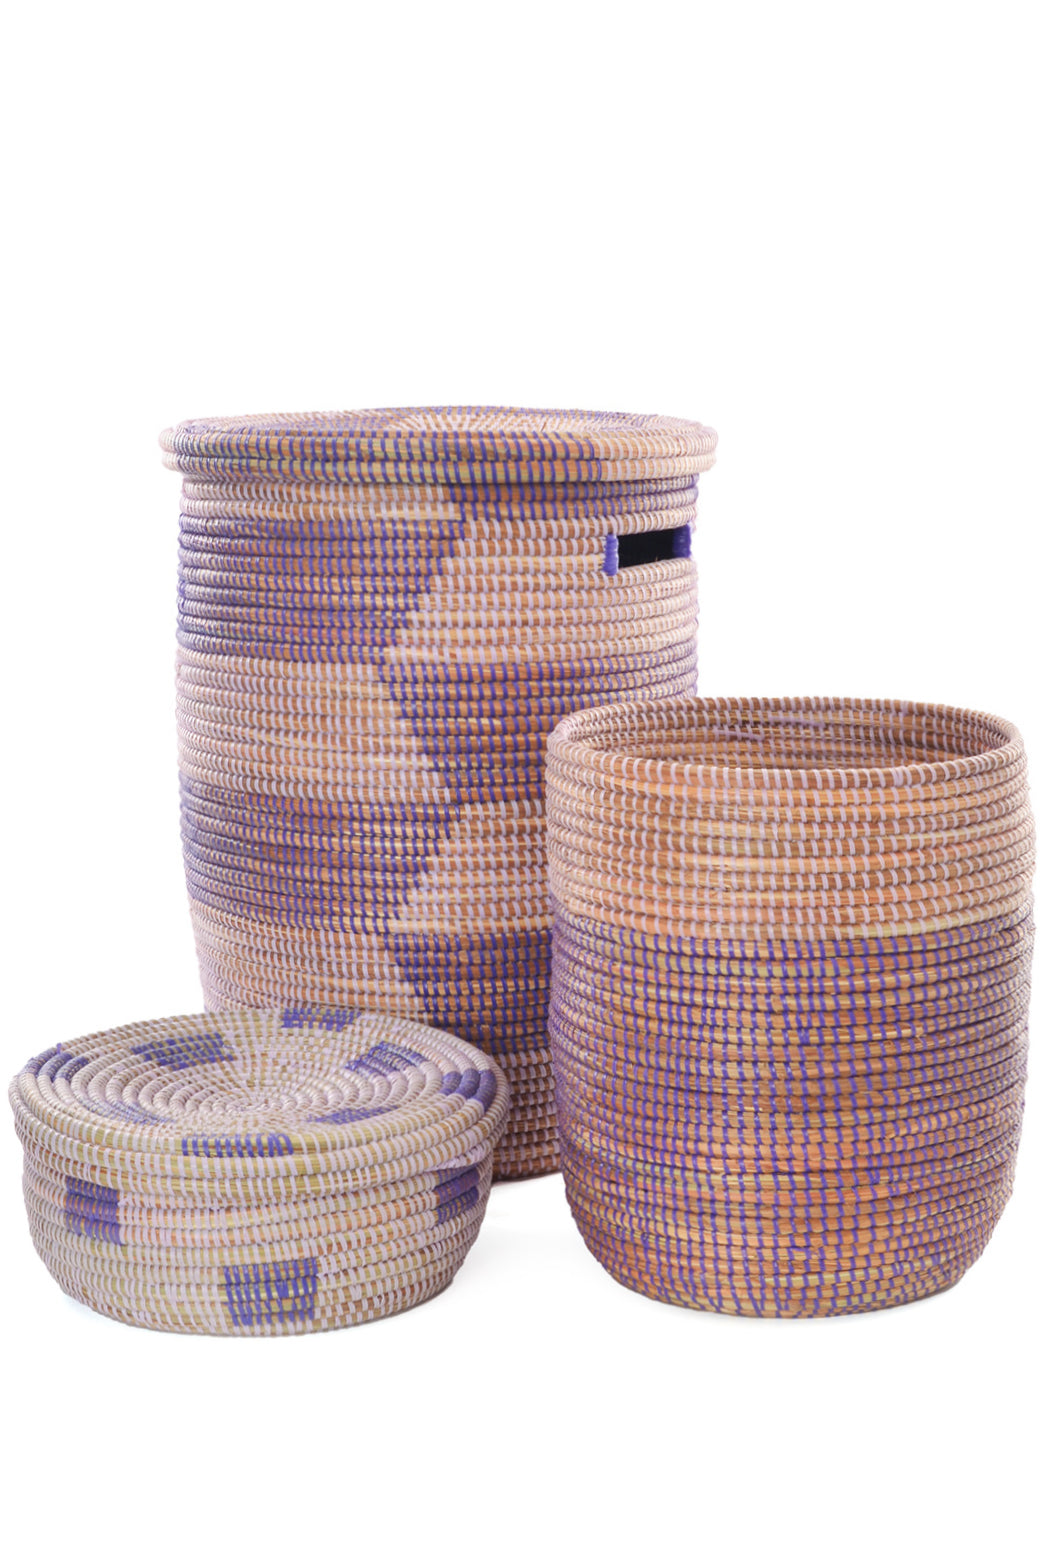 Lavender Fields Hamper & Baskets Set